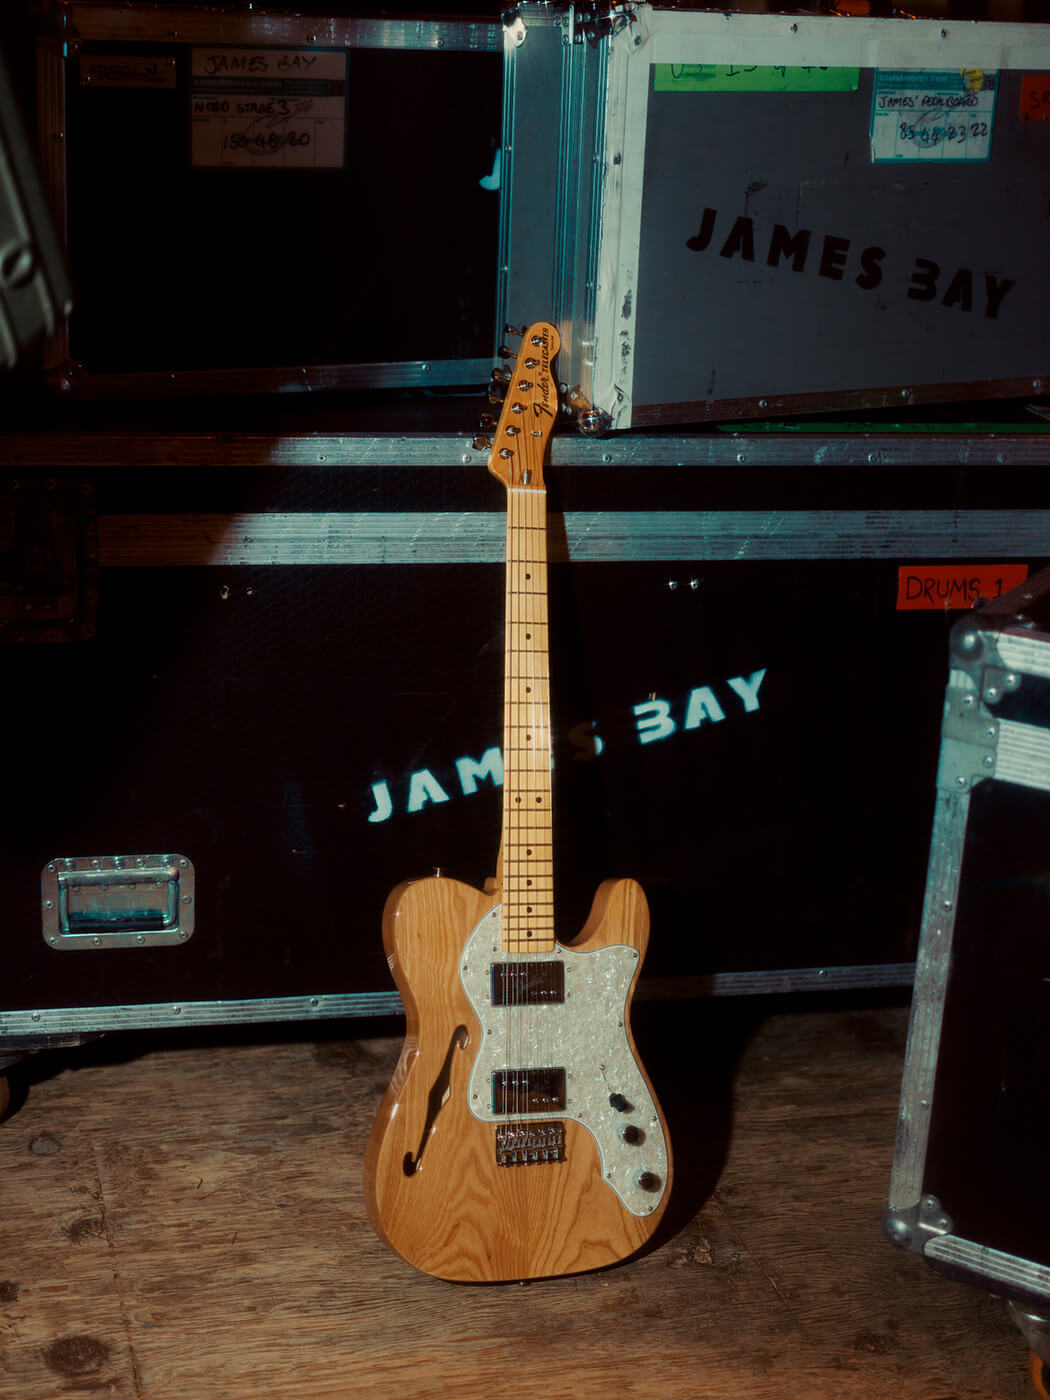 James Bay wit the Fender American Vintage II